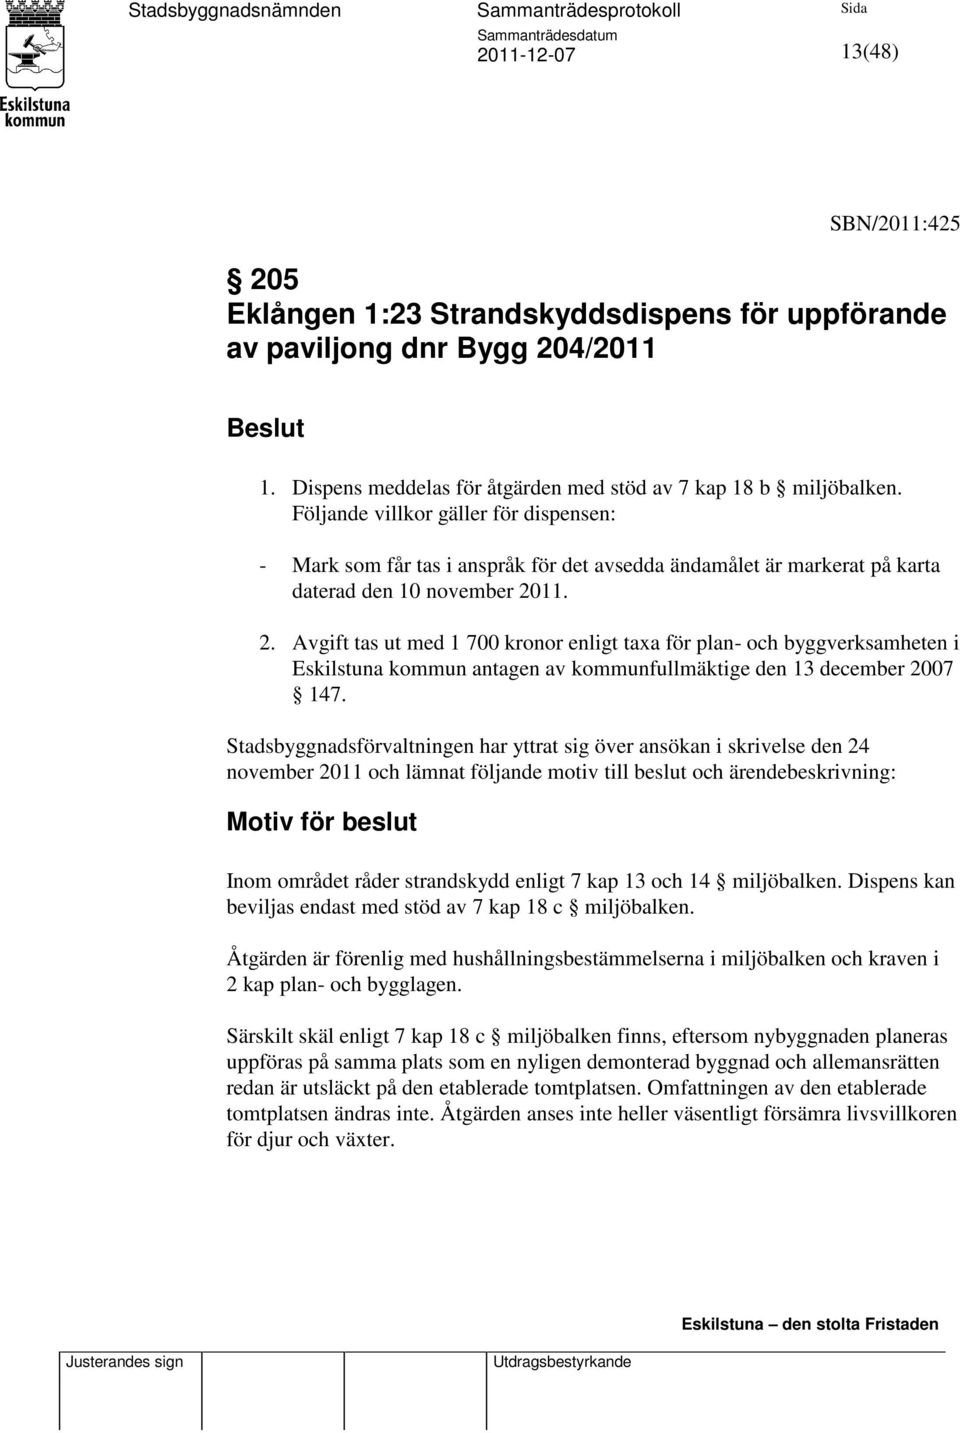 11. 2. Avgift tas ut med 1 700 kronor enligt taxa för plan- och byggverksamheten i Eskilstuna kommun antagen av kommunfullmäktige den 13 december 2007 147.